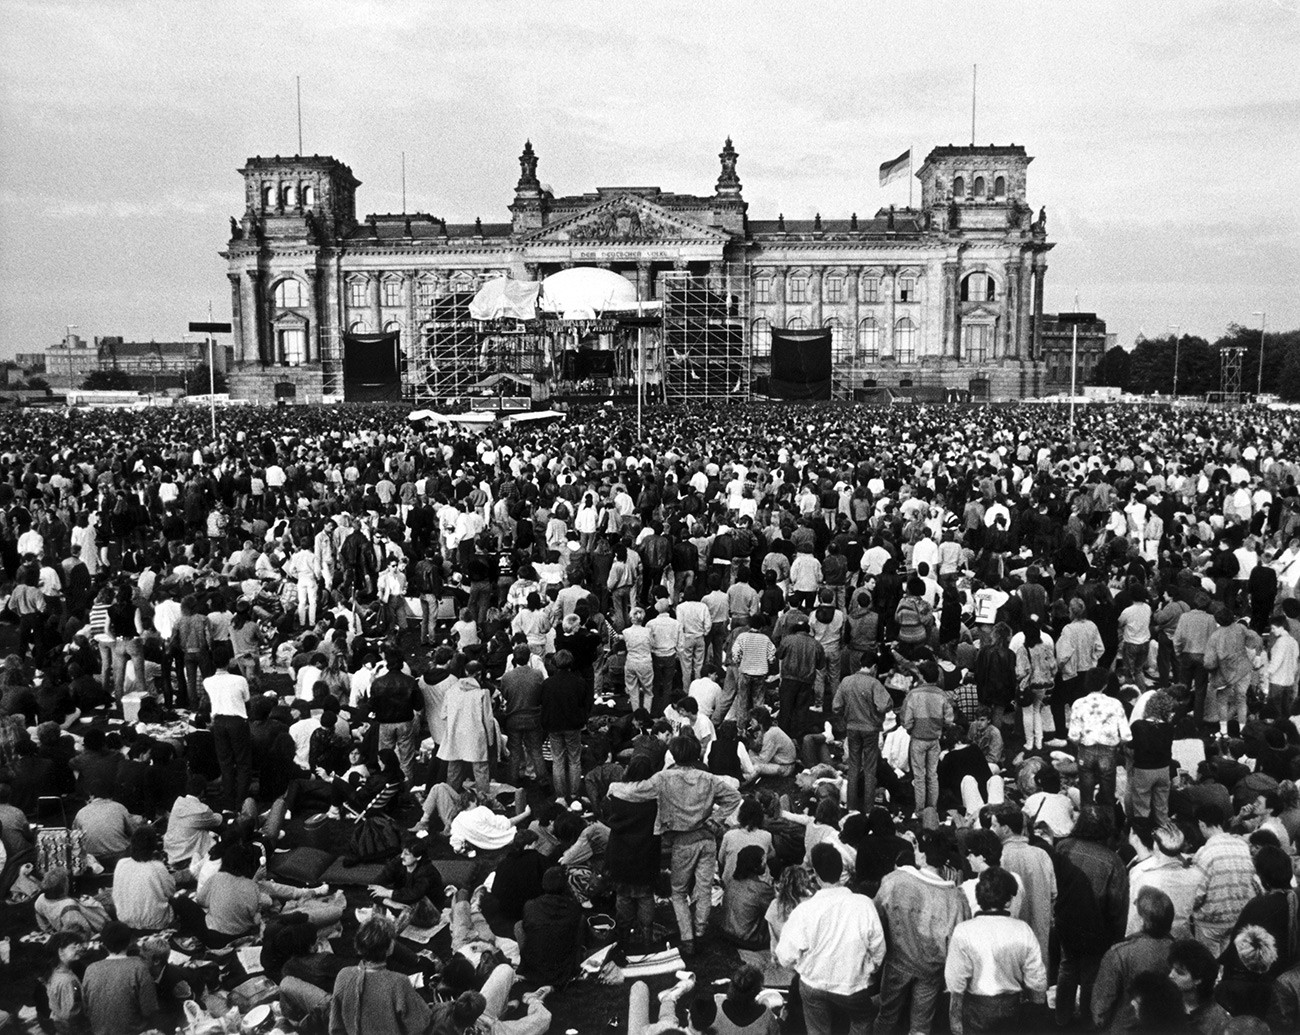 6 giugno 1987: folla di persone radunate davanti all’edificio del Reichstag a Berlino Ovest per assistere a un concerto del musicista britannico David Bowie